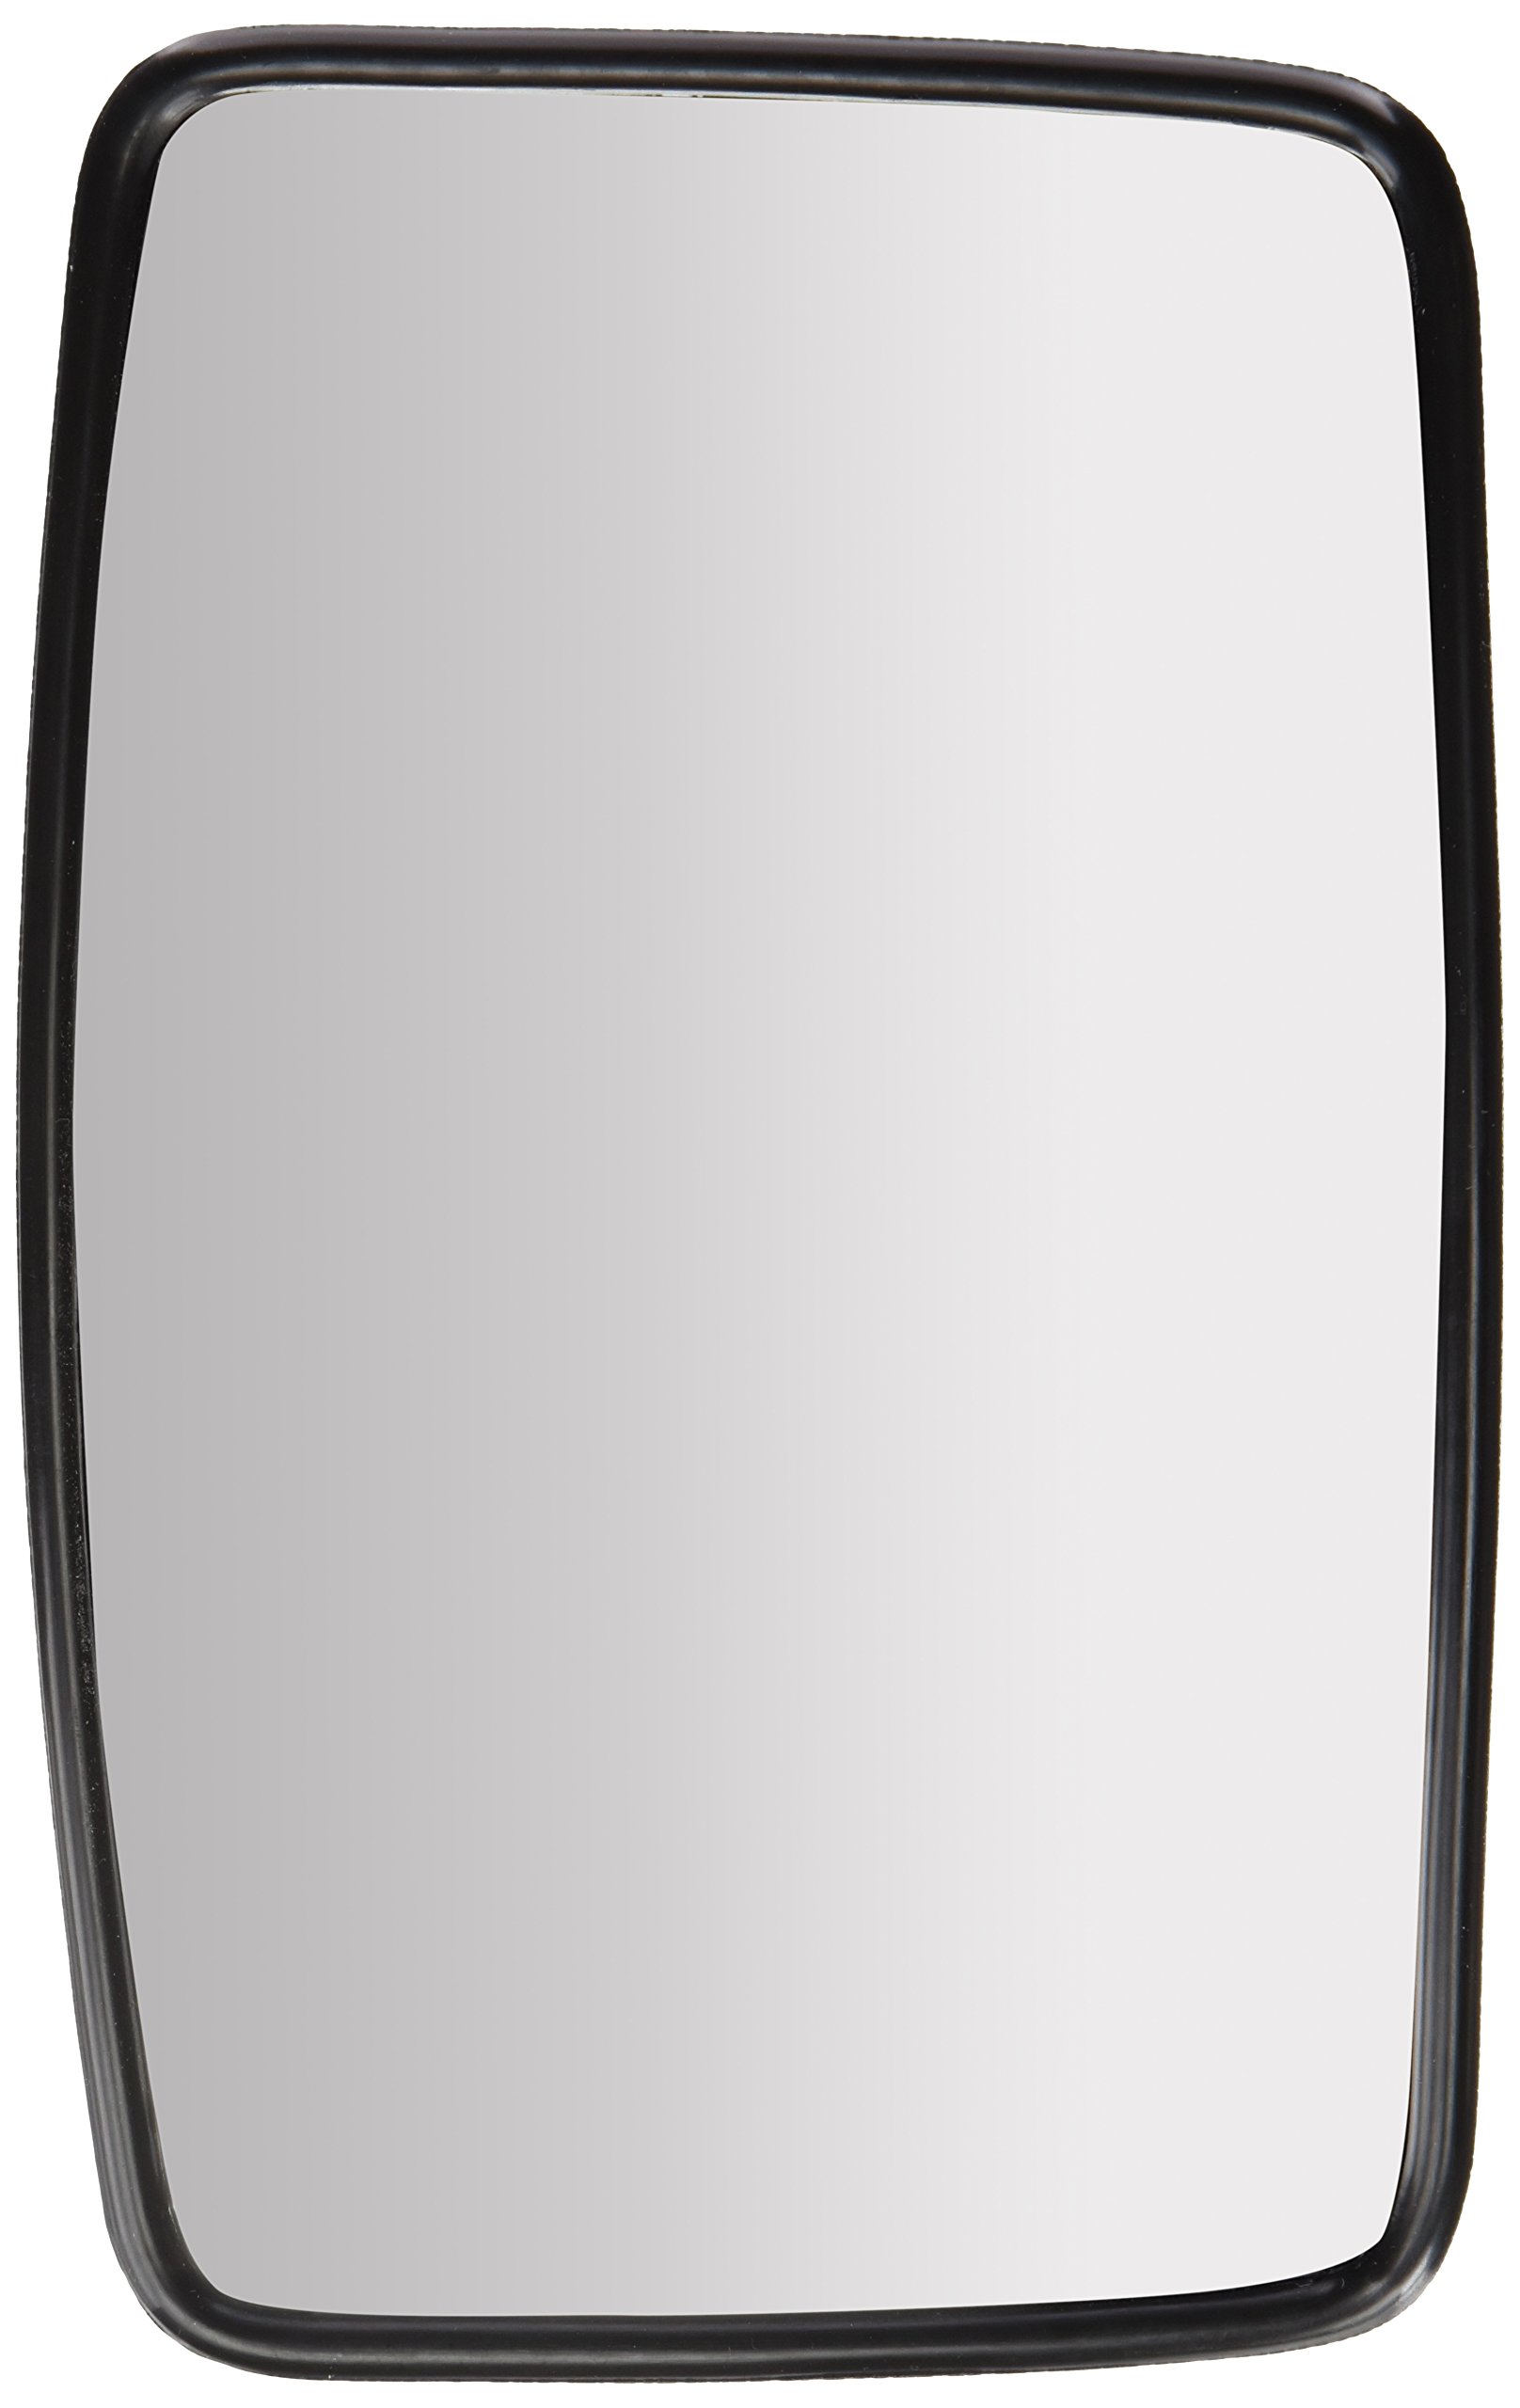 HELLA - Außenspiegel - 12V - Kunststoffgehäuse - schwarz - Breite: 157mm - Höhe: 244mm - beidseitig - 8SB 004 288-103 von Hella